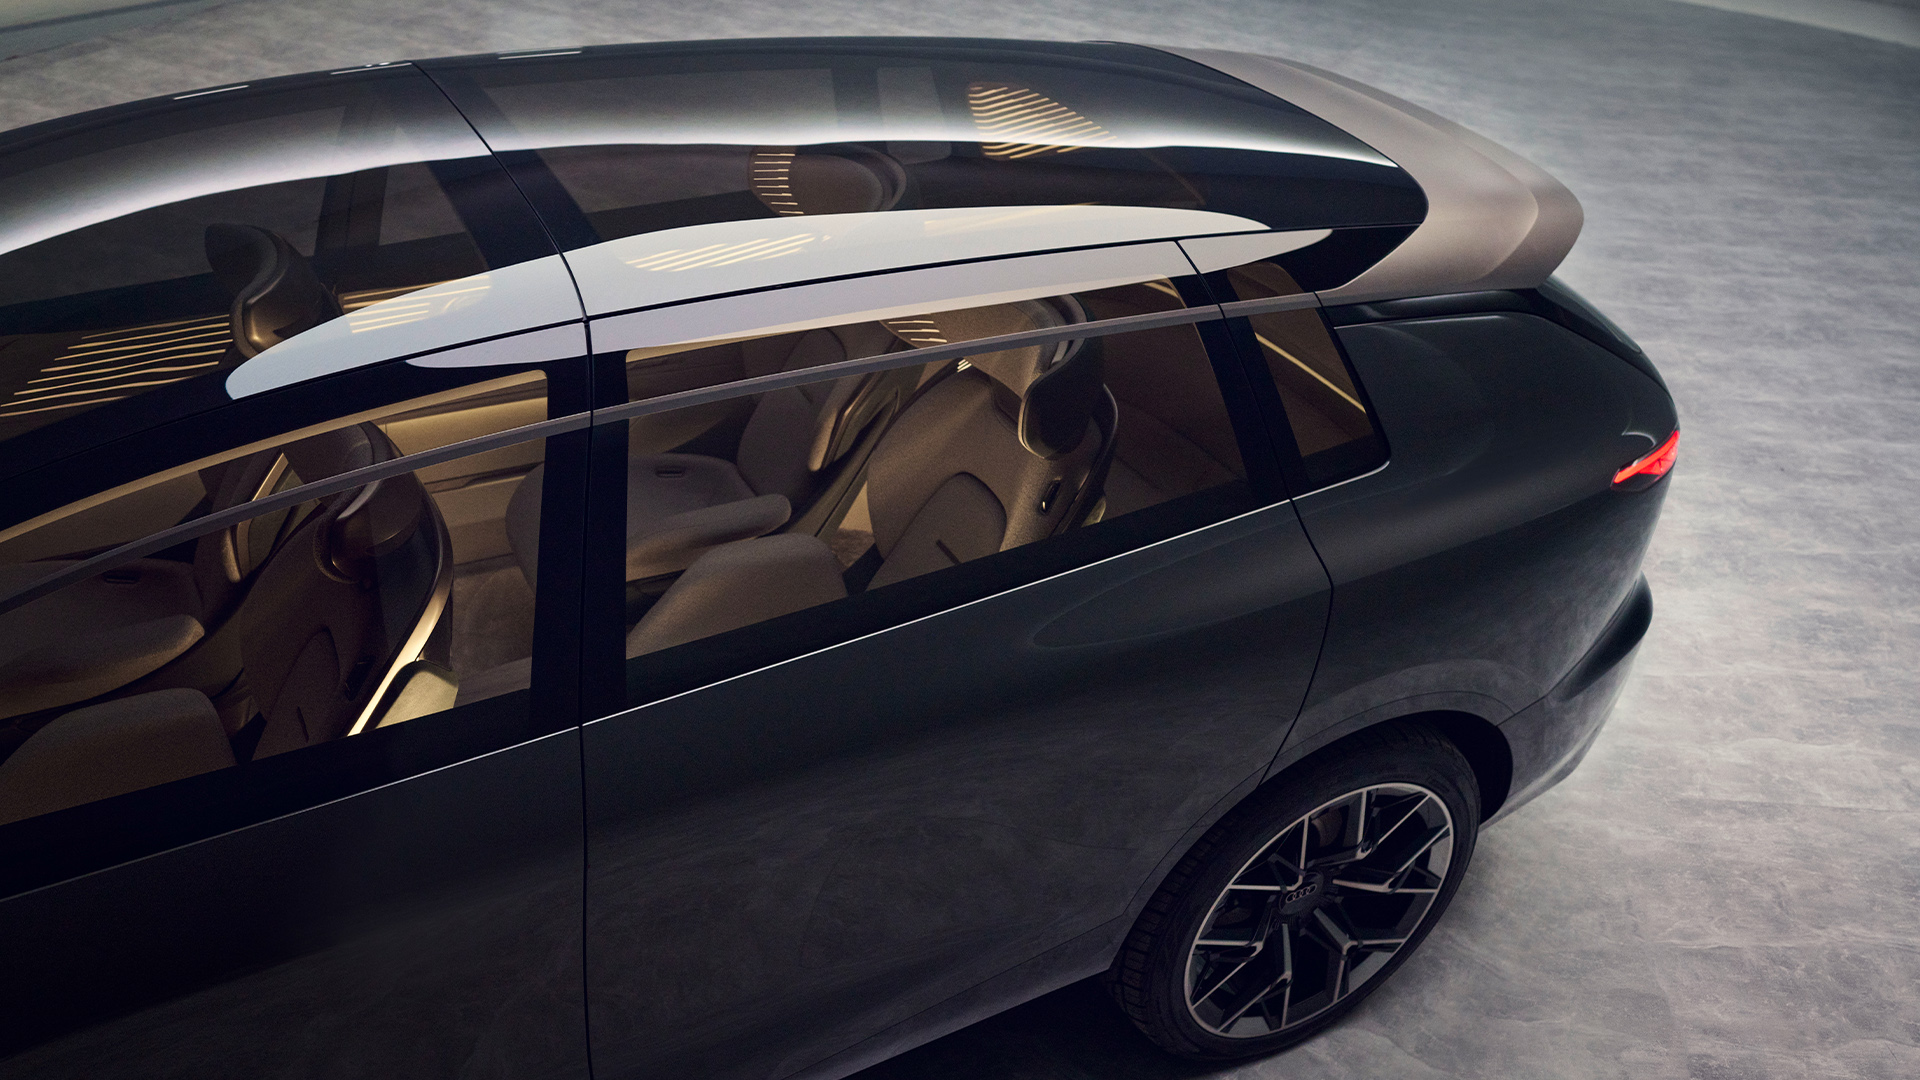 Kupeen i Audi urbansphere concept sett gjennom glasstaket.